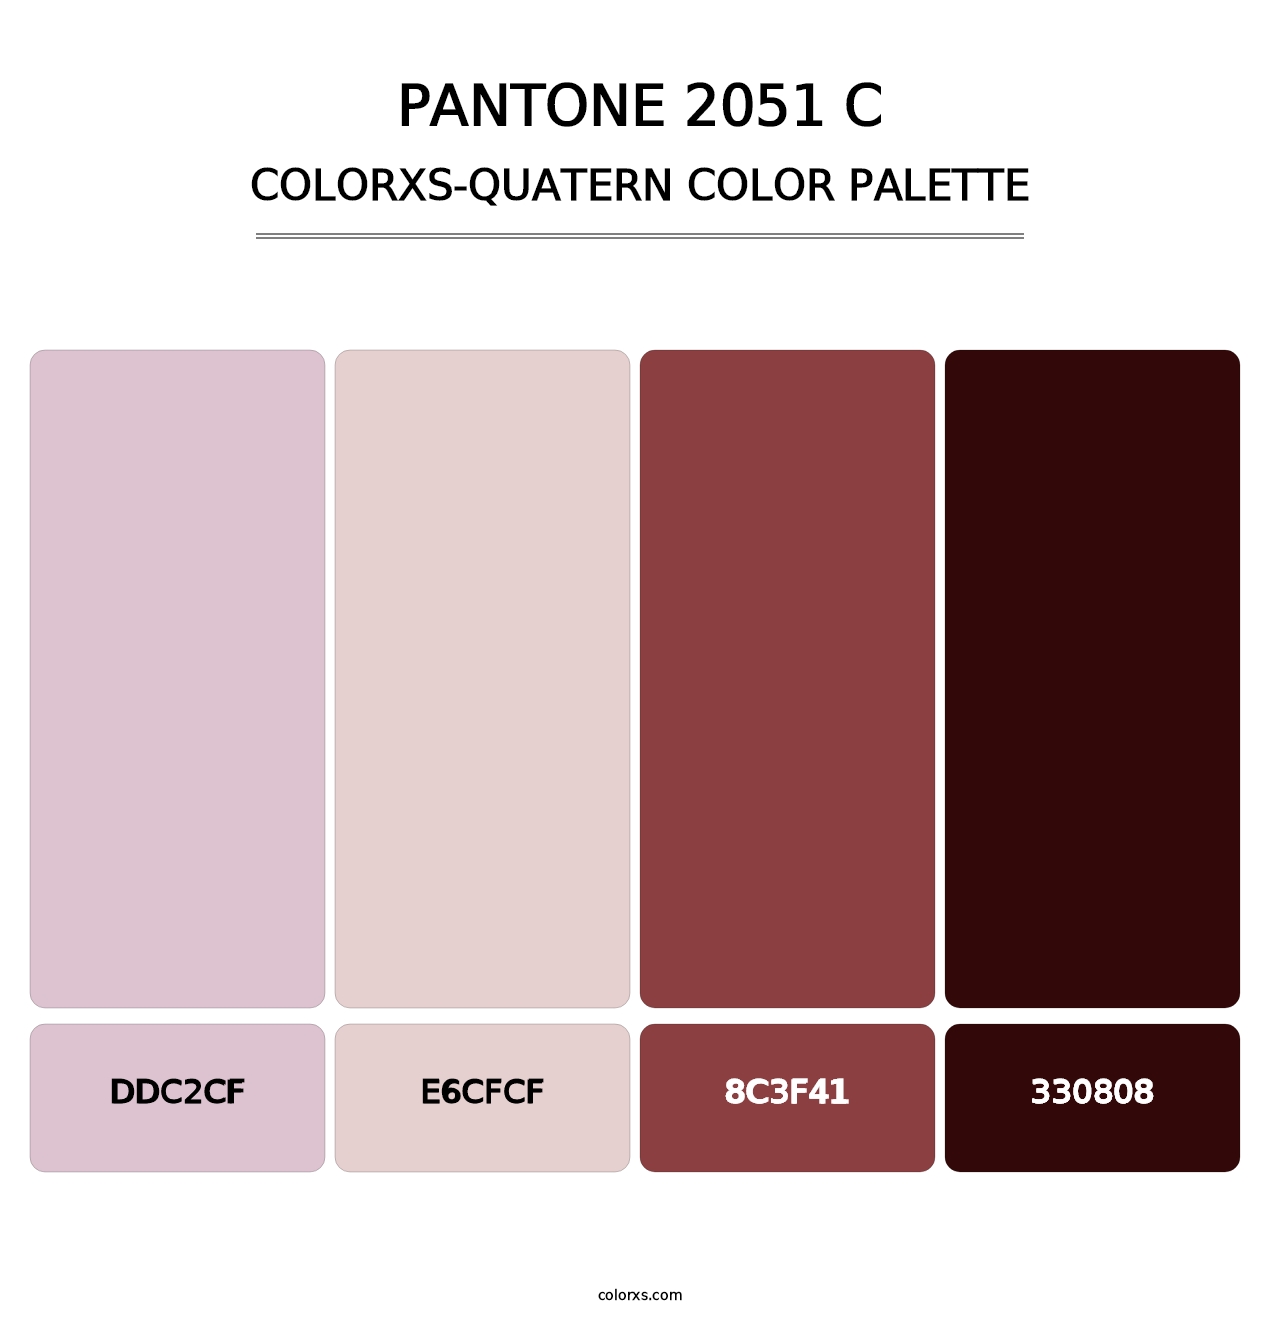 PANTONE 2051 C - Colorxs Quatern Palette